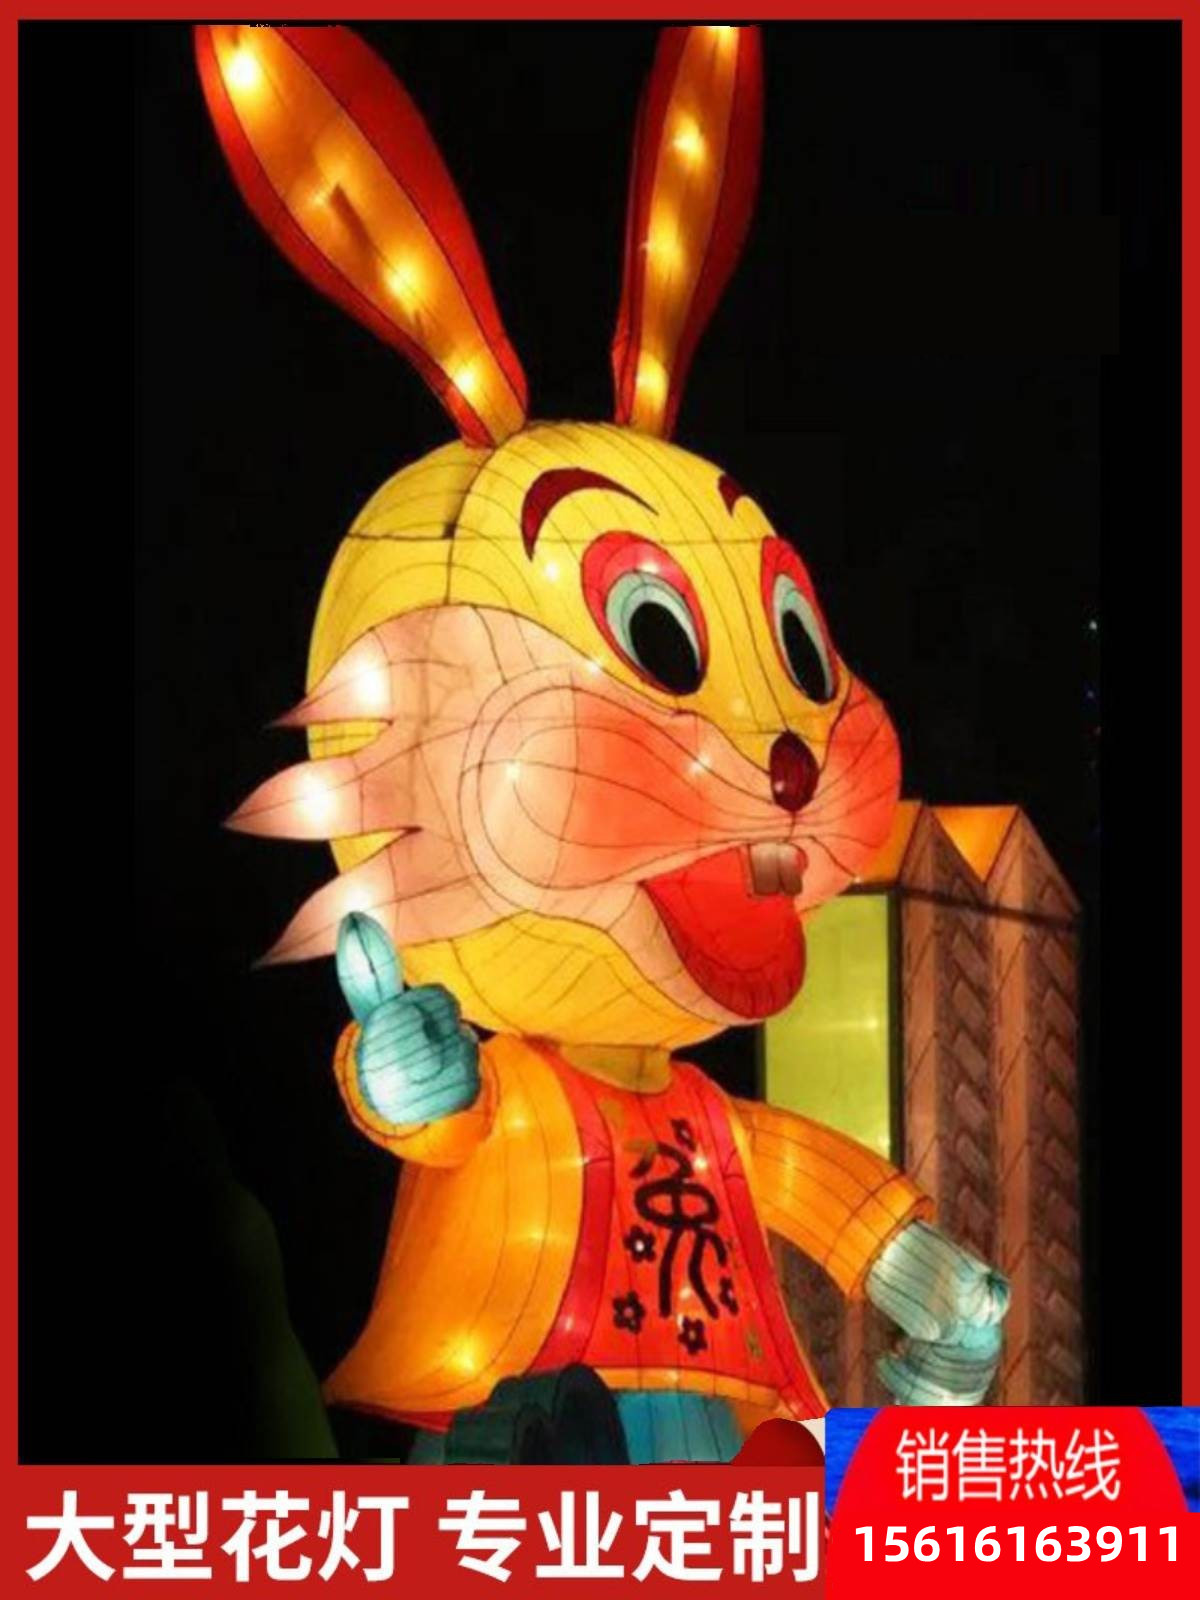 。灯展十二生肖灯兔年大型节日花灯春节彩灯造型亮化户外灯光秀景